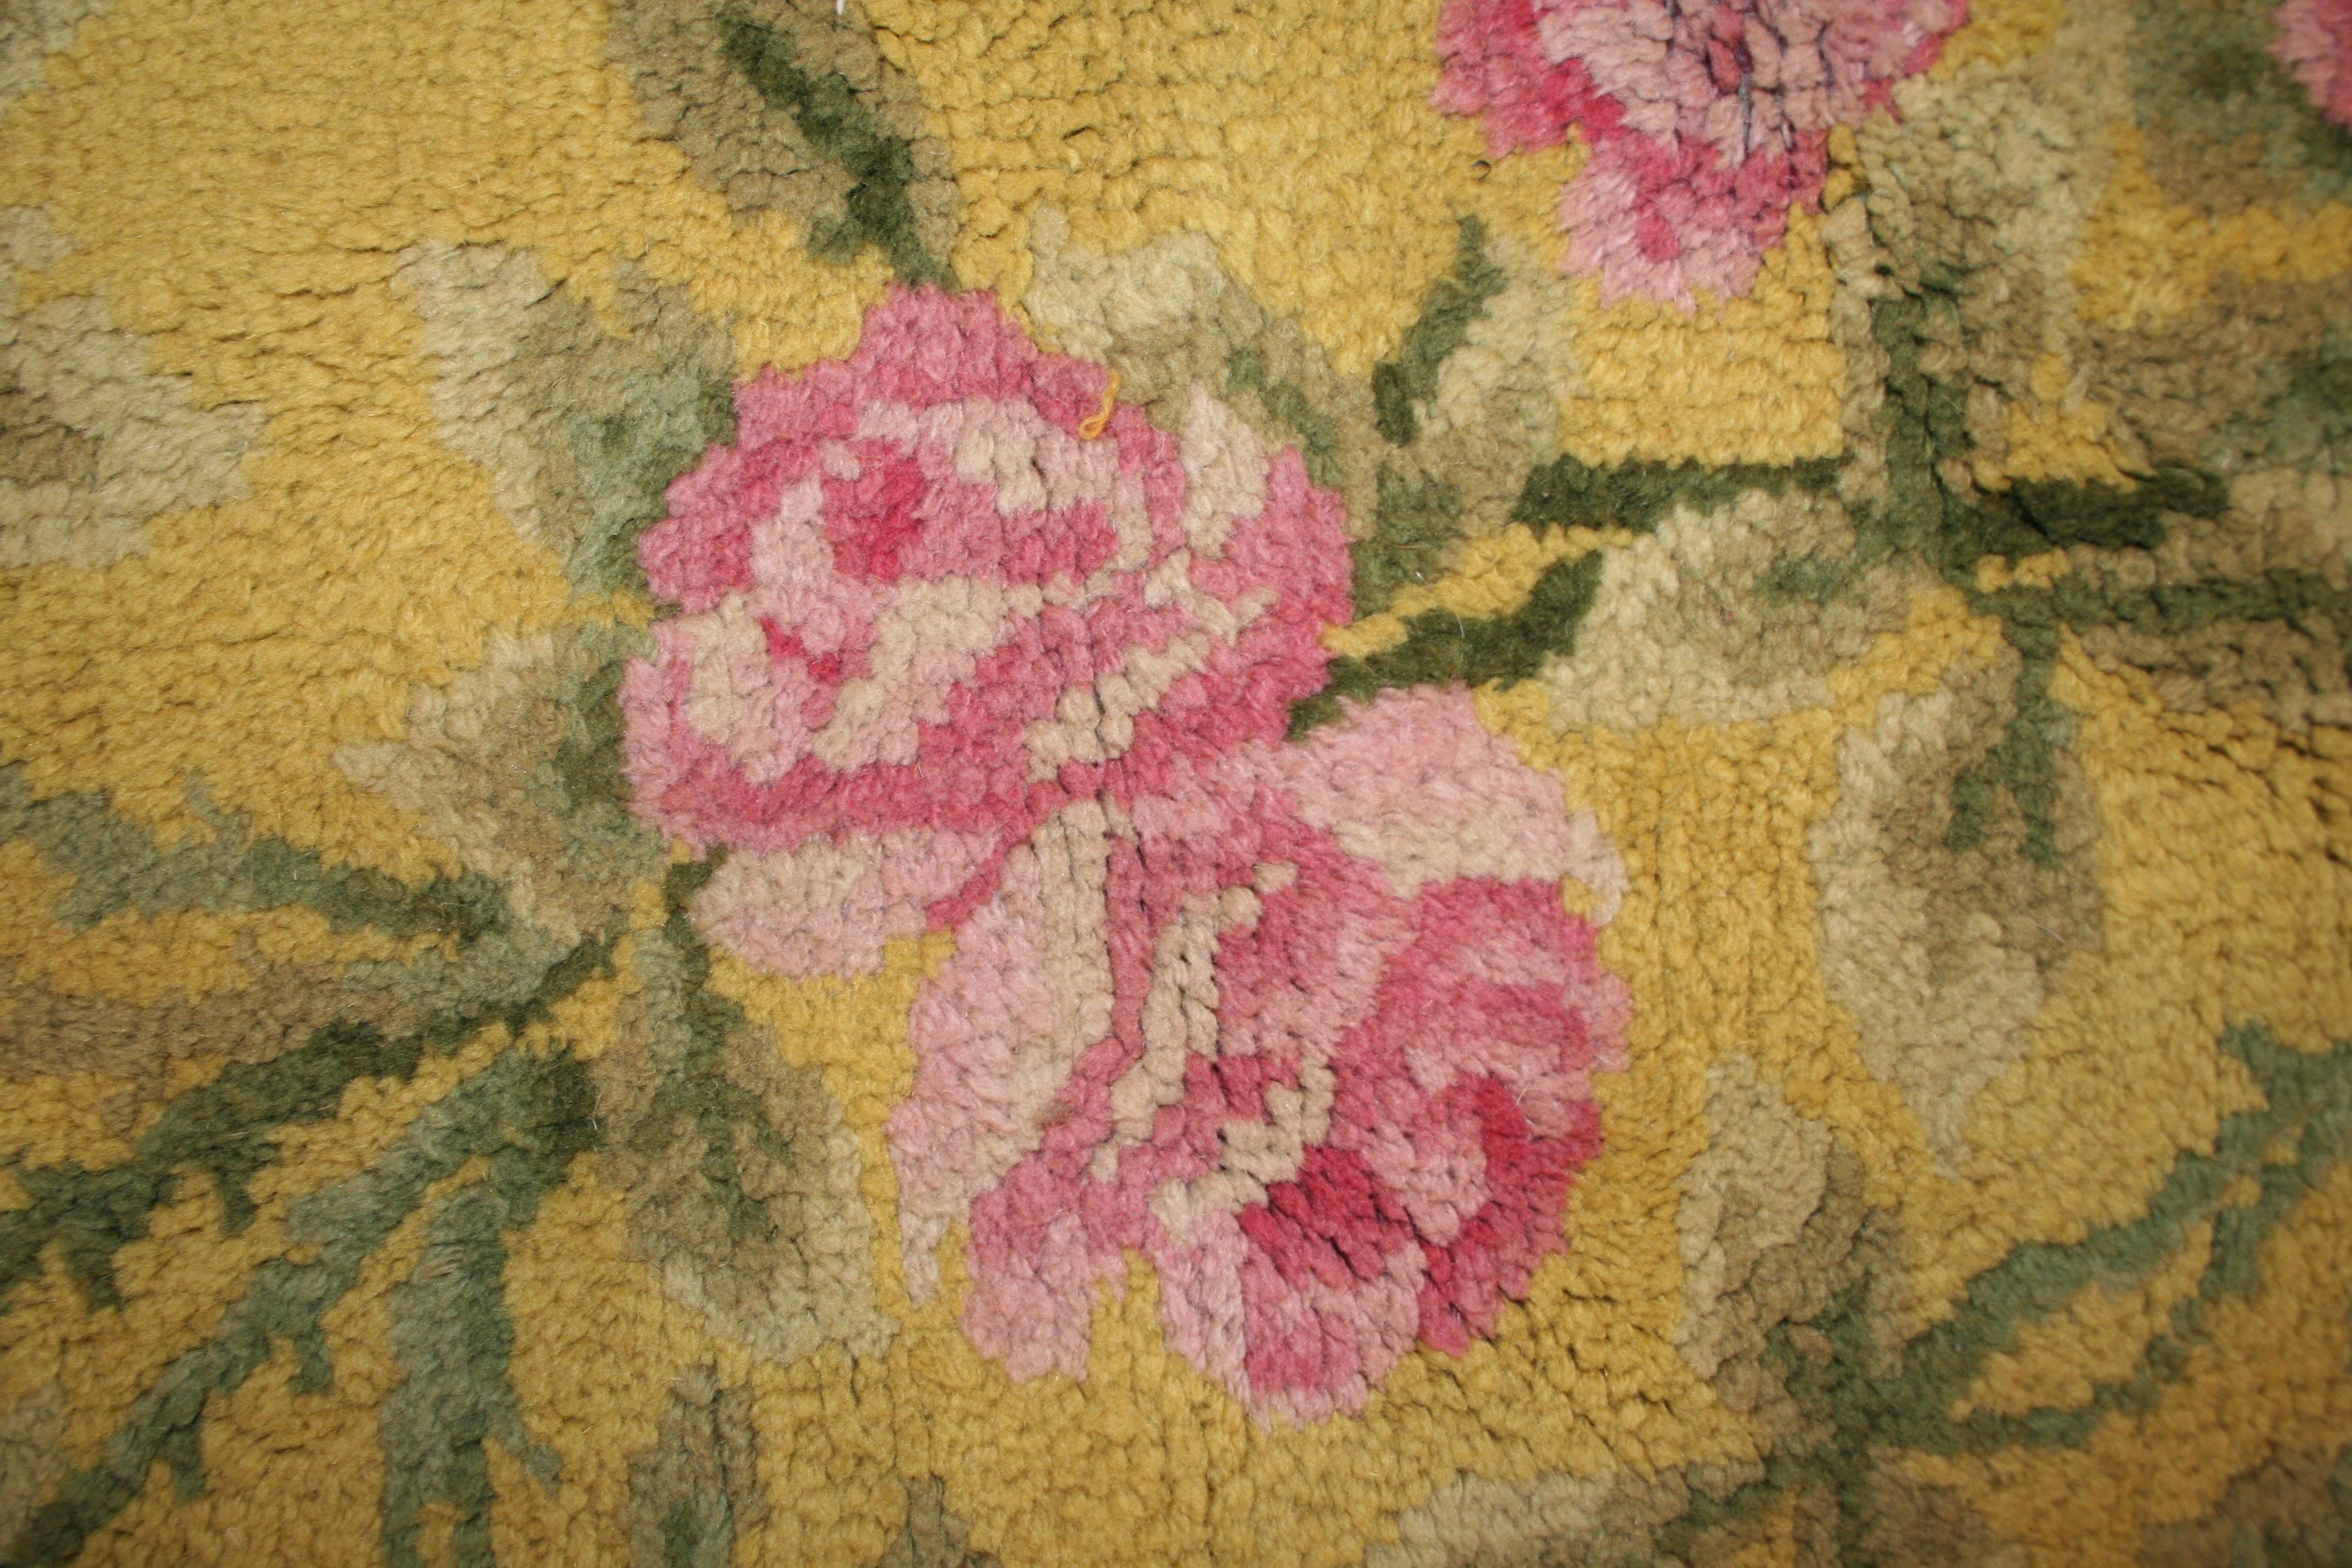 art nouveau rugs